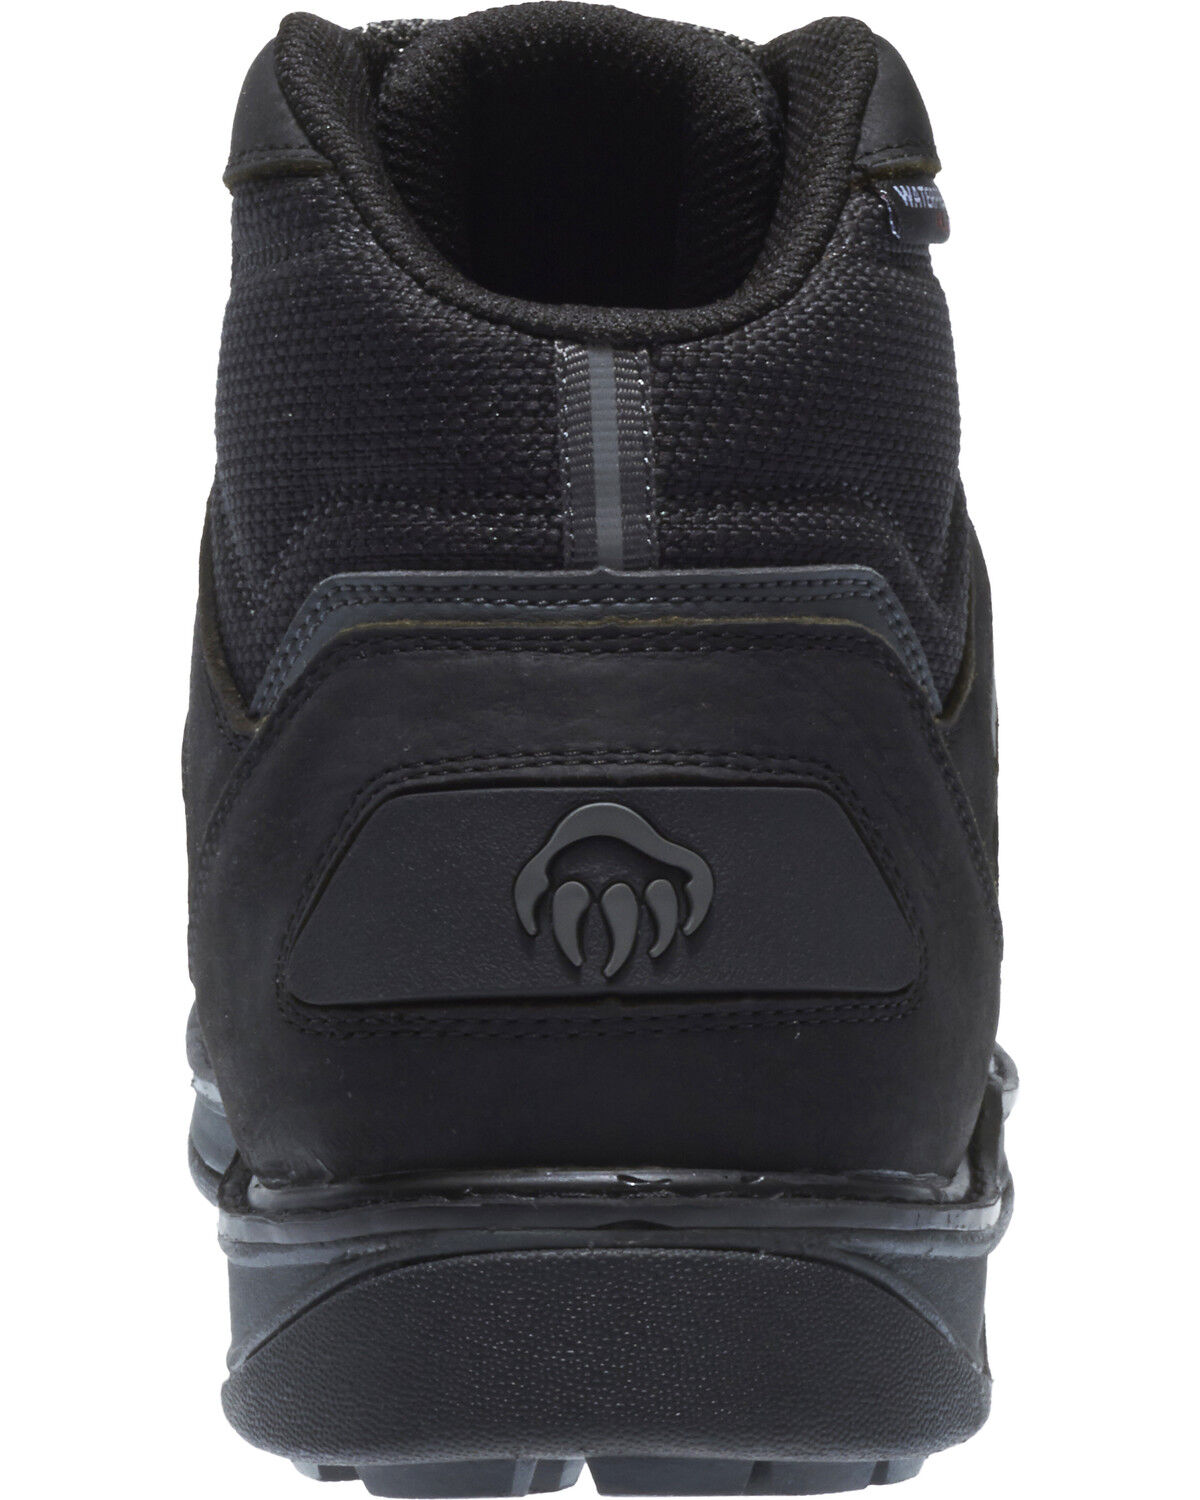 wolverine black waterproof boots